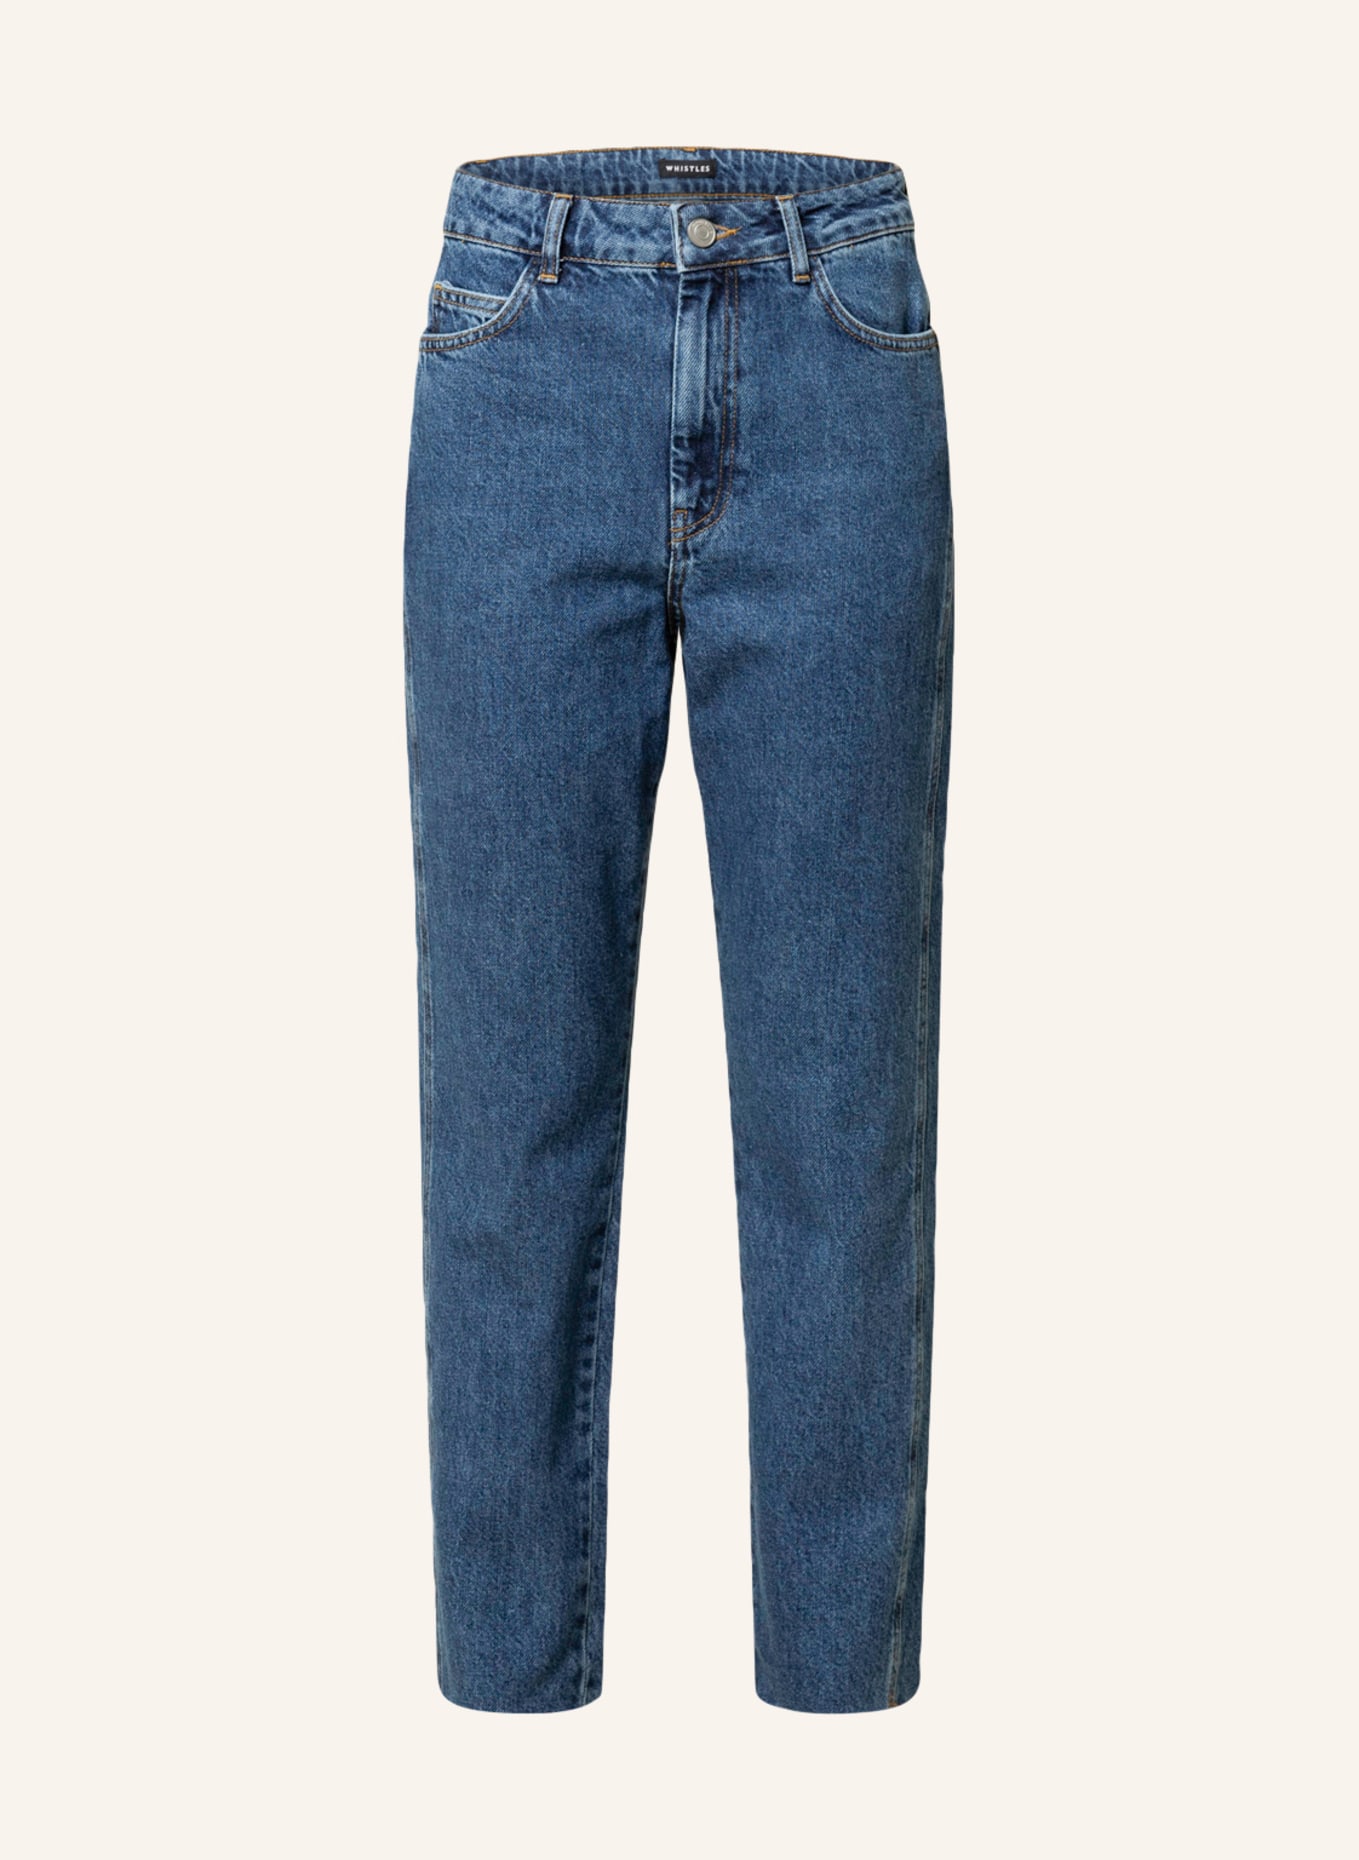 WHISTLES Skinny Jeans, Farbe: 12 Denim (Bild 1)